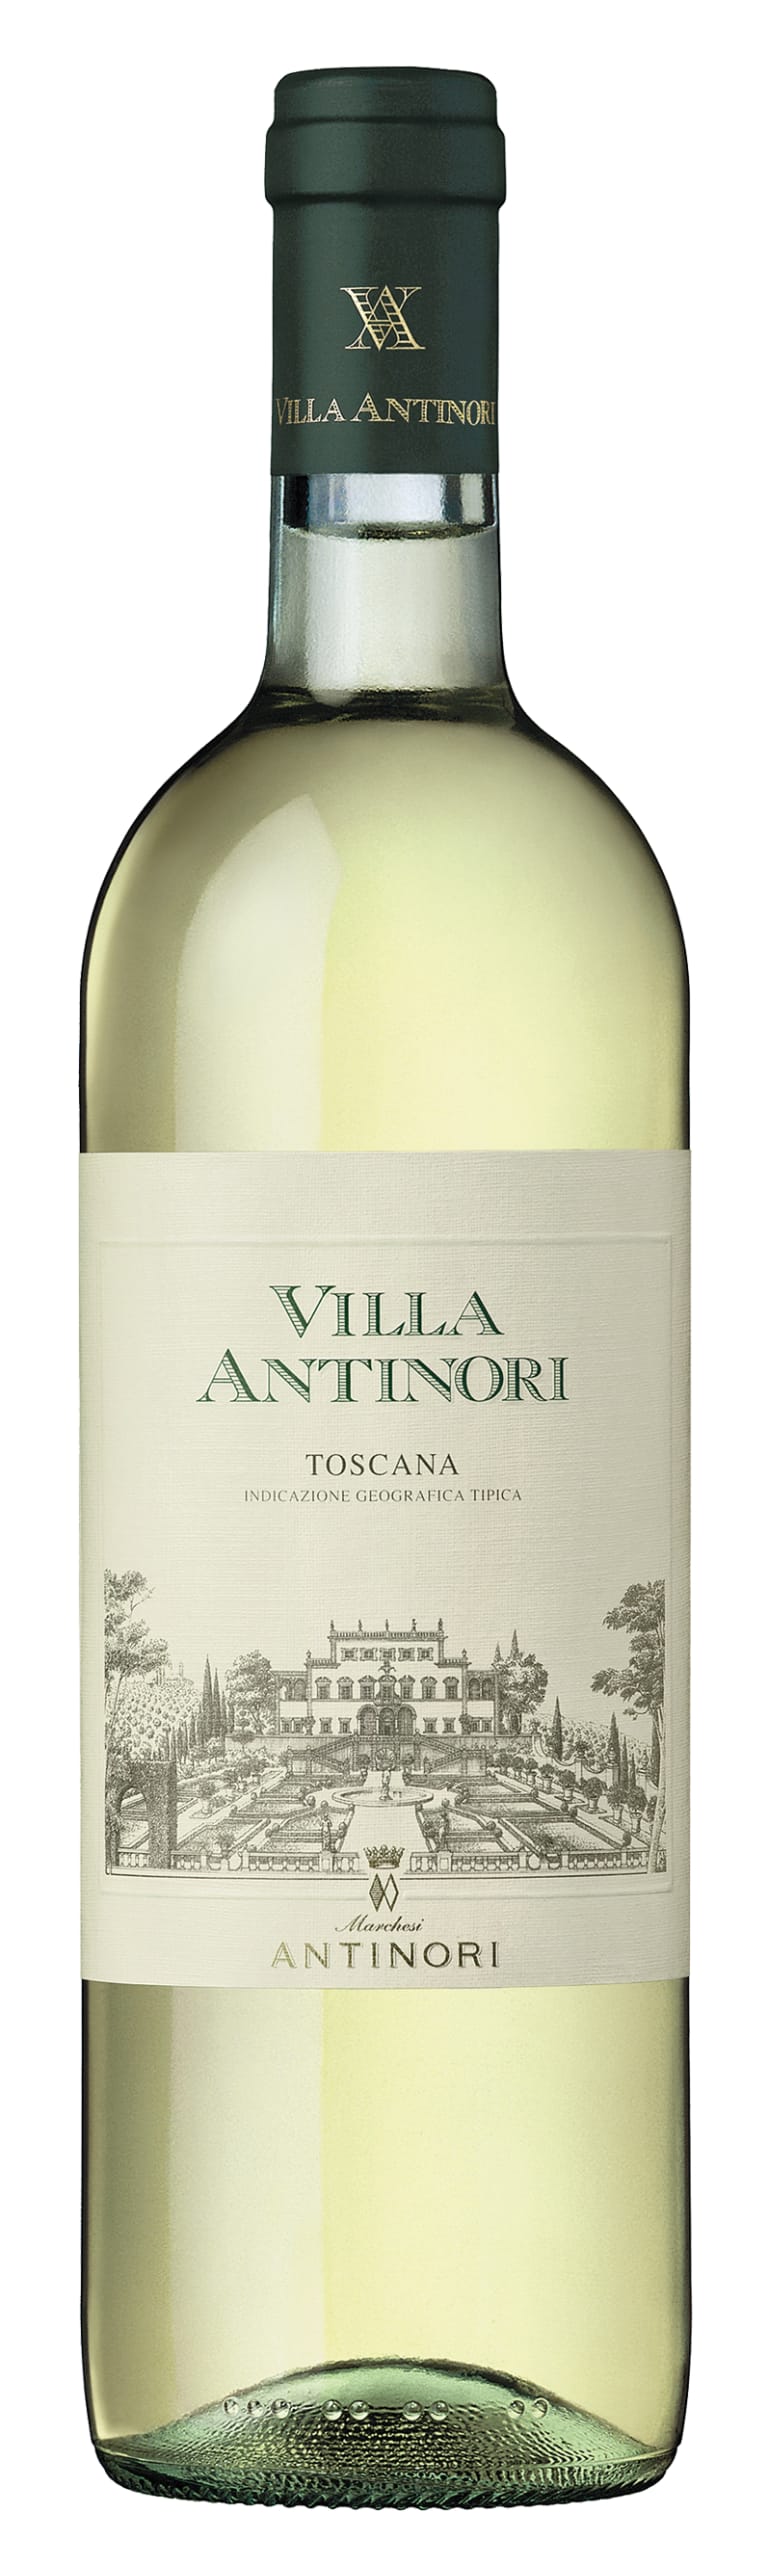 Antinori Toscana Villa Antinori 2019 – Wine Chateau